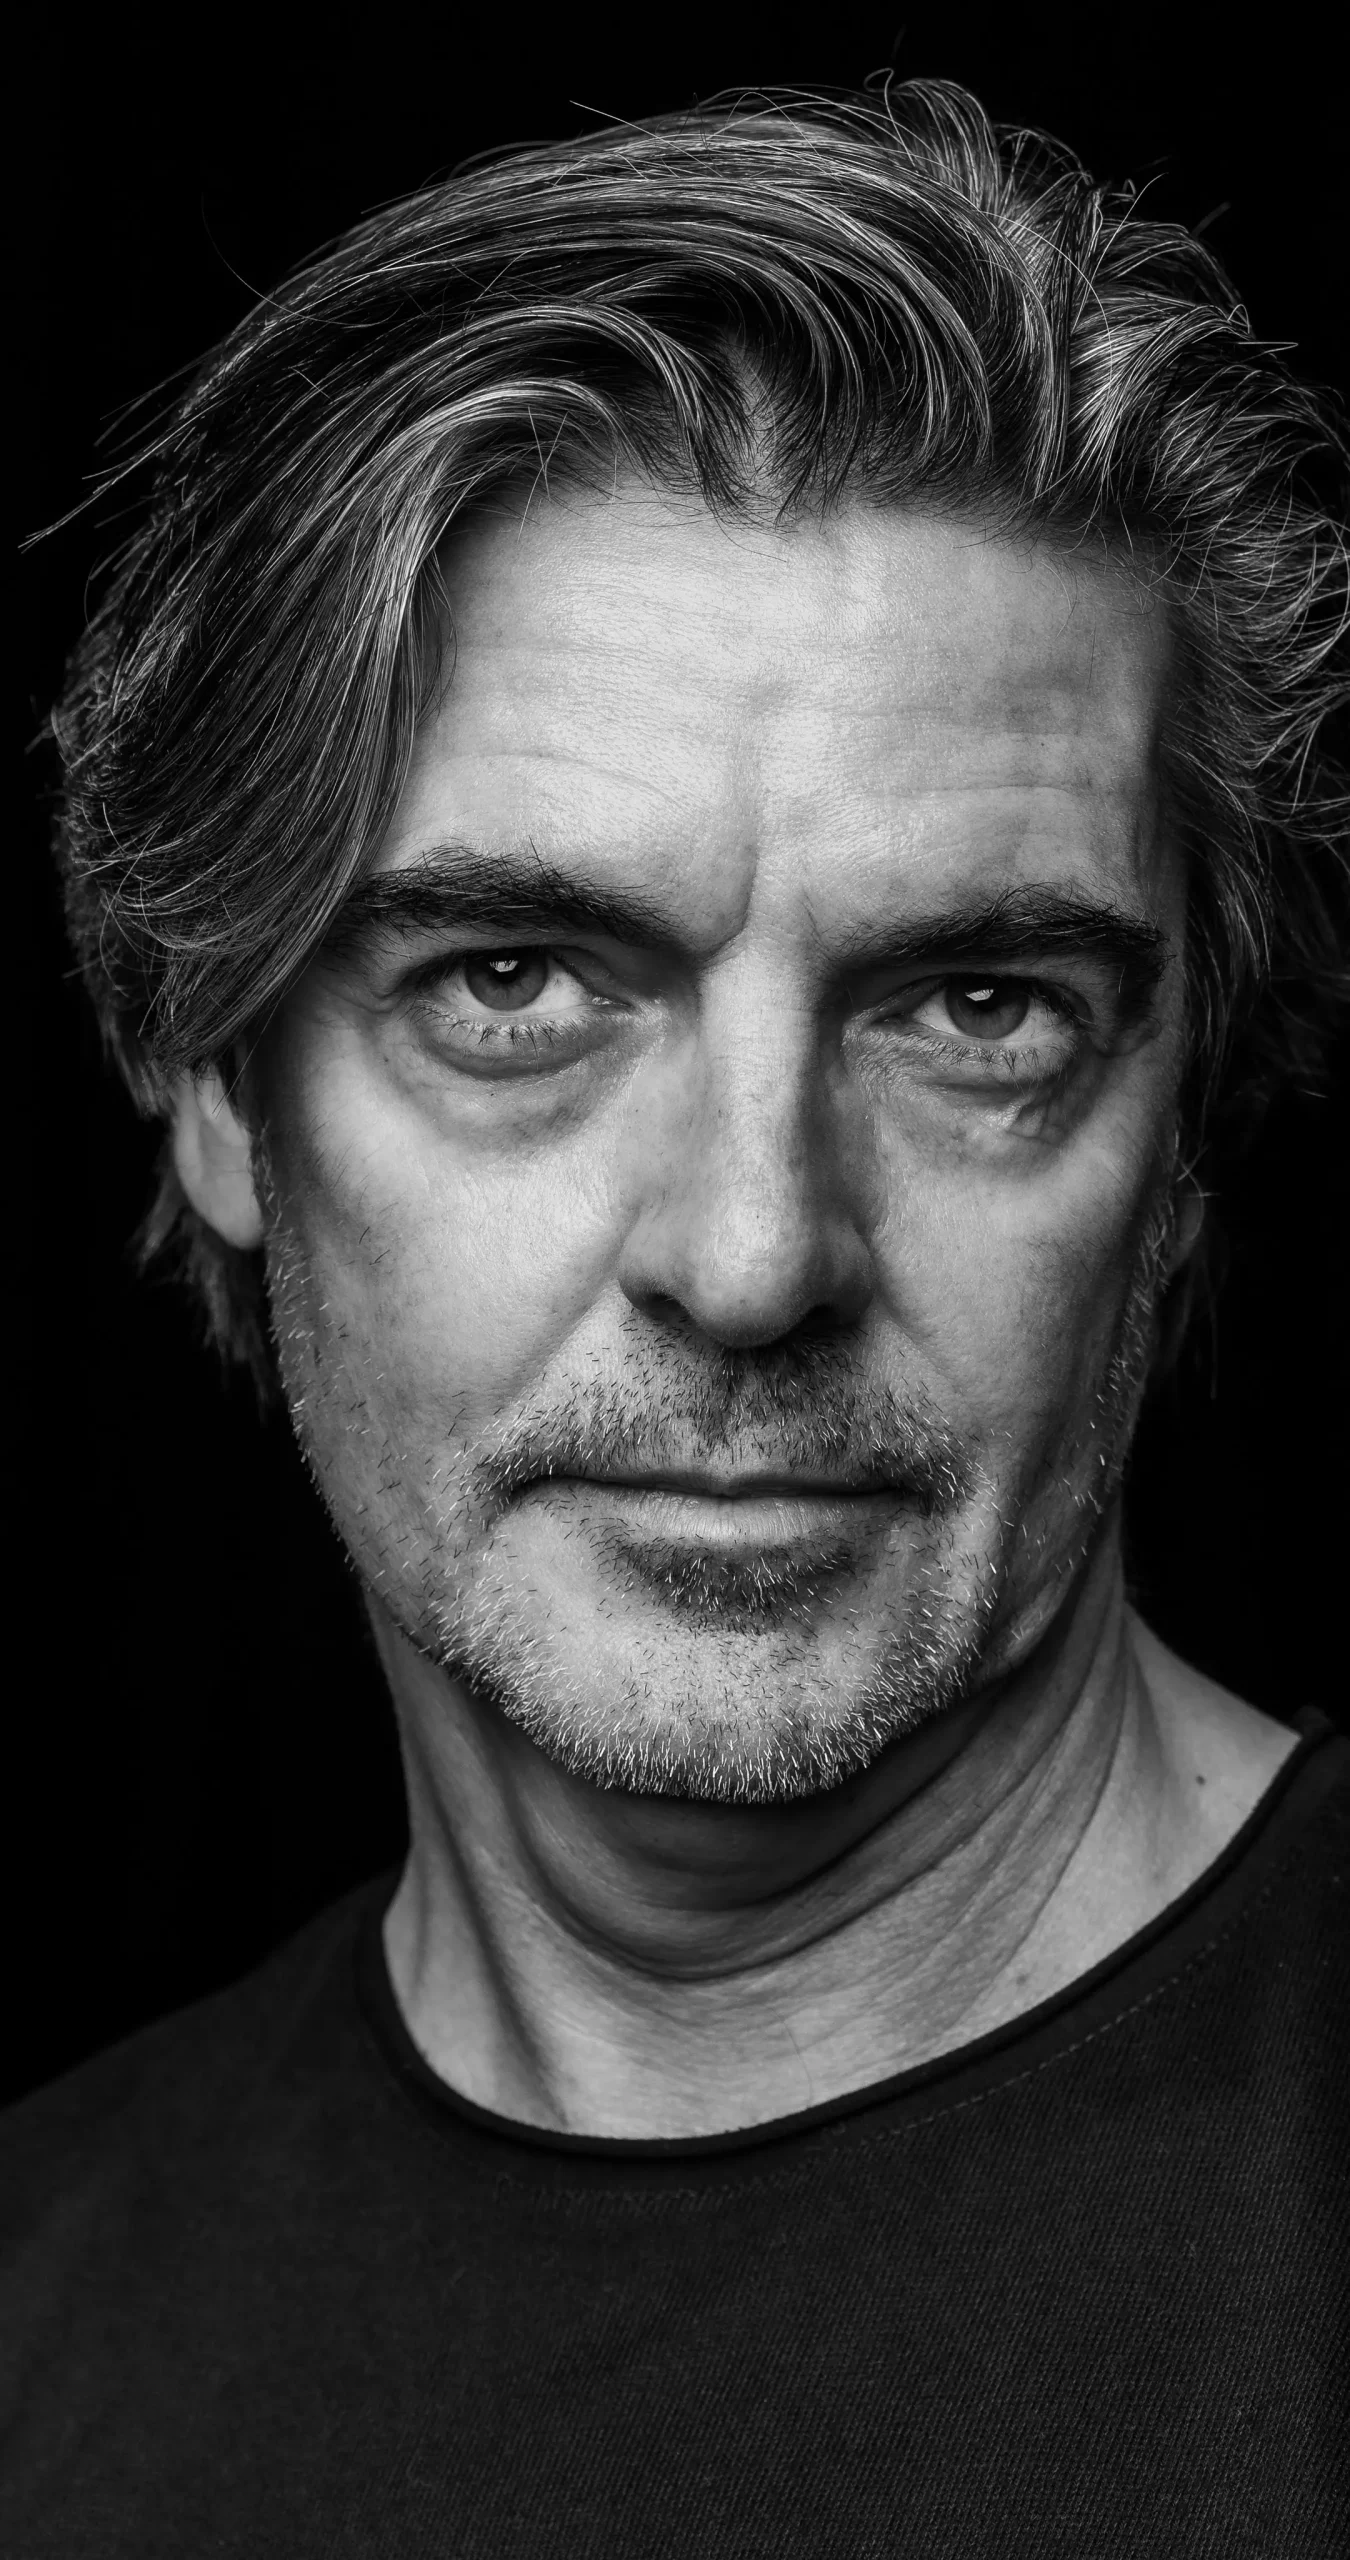 José Filemón - Fotografía Retrato del actor Fernando Caride realizada en blanco y negro